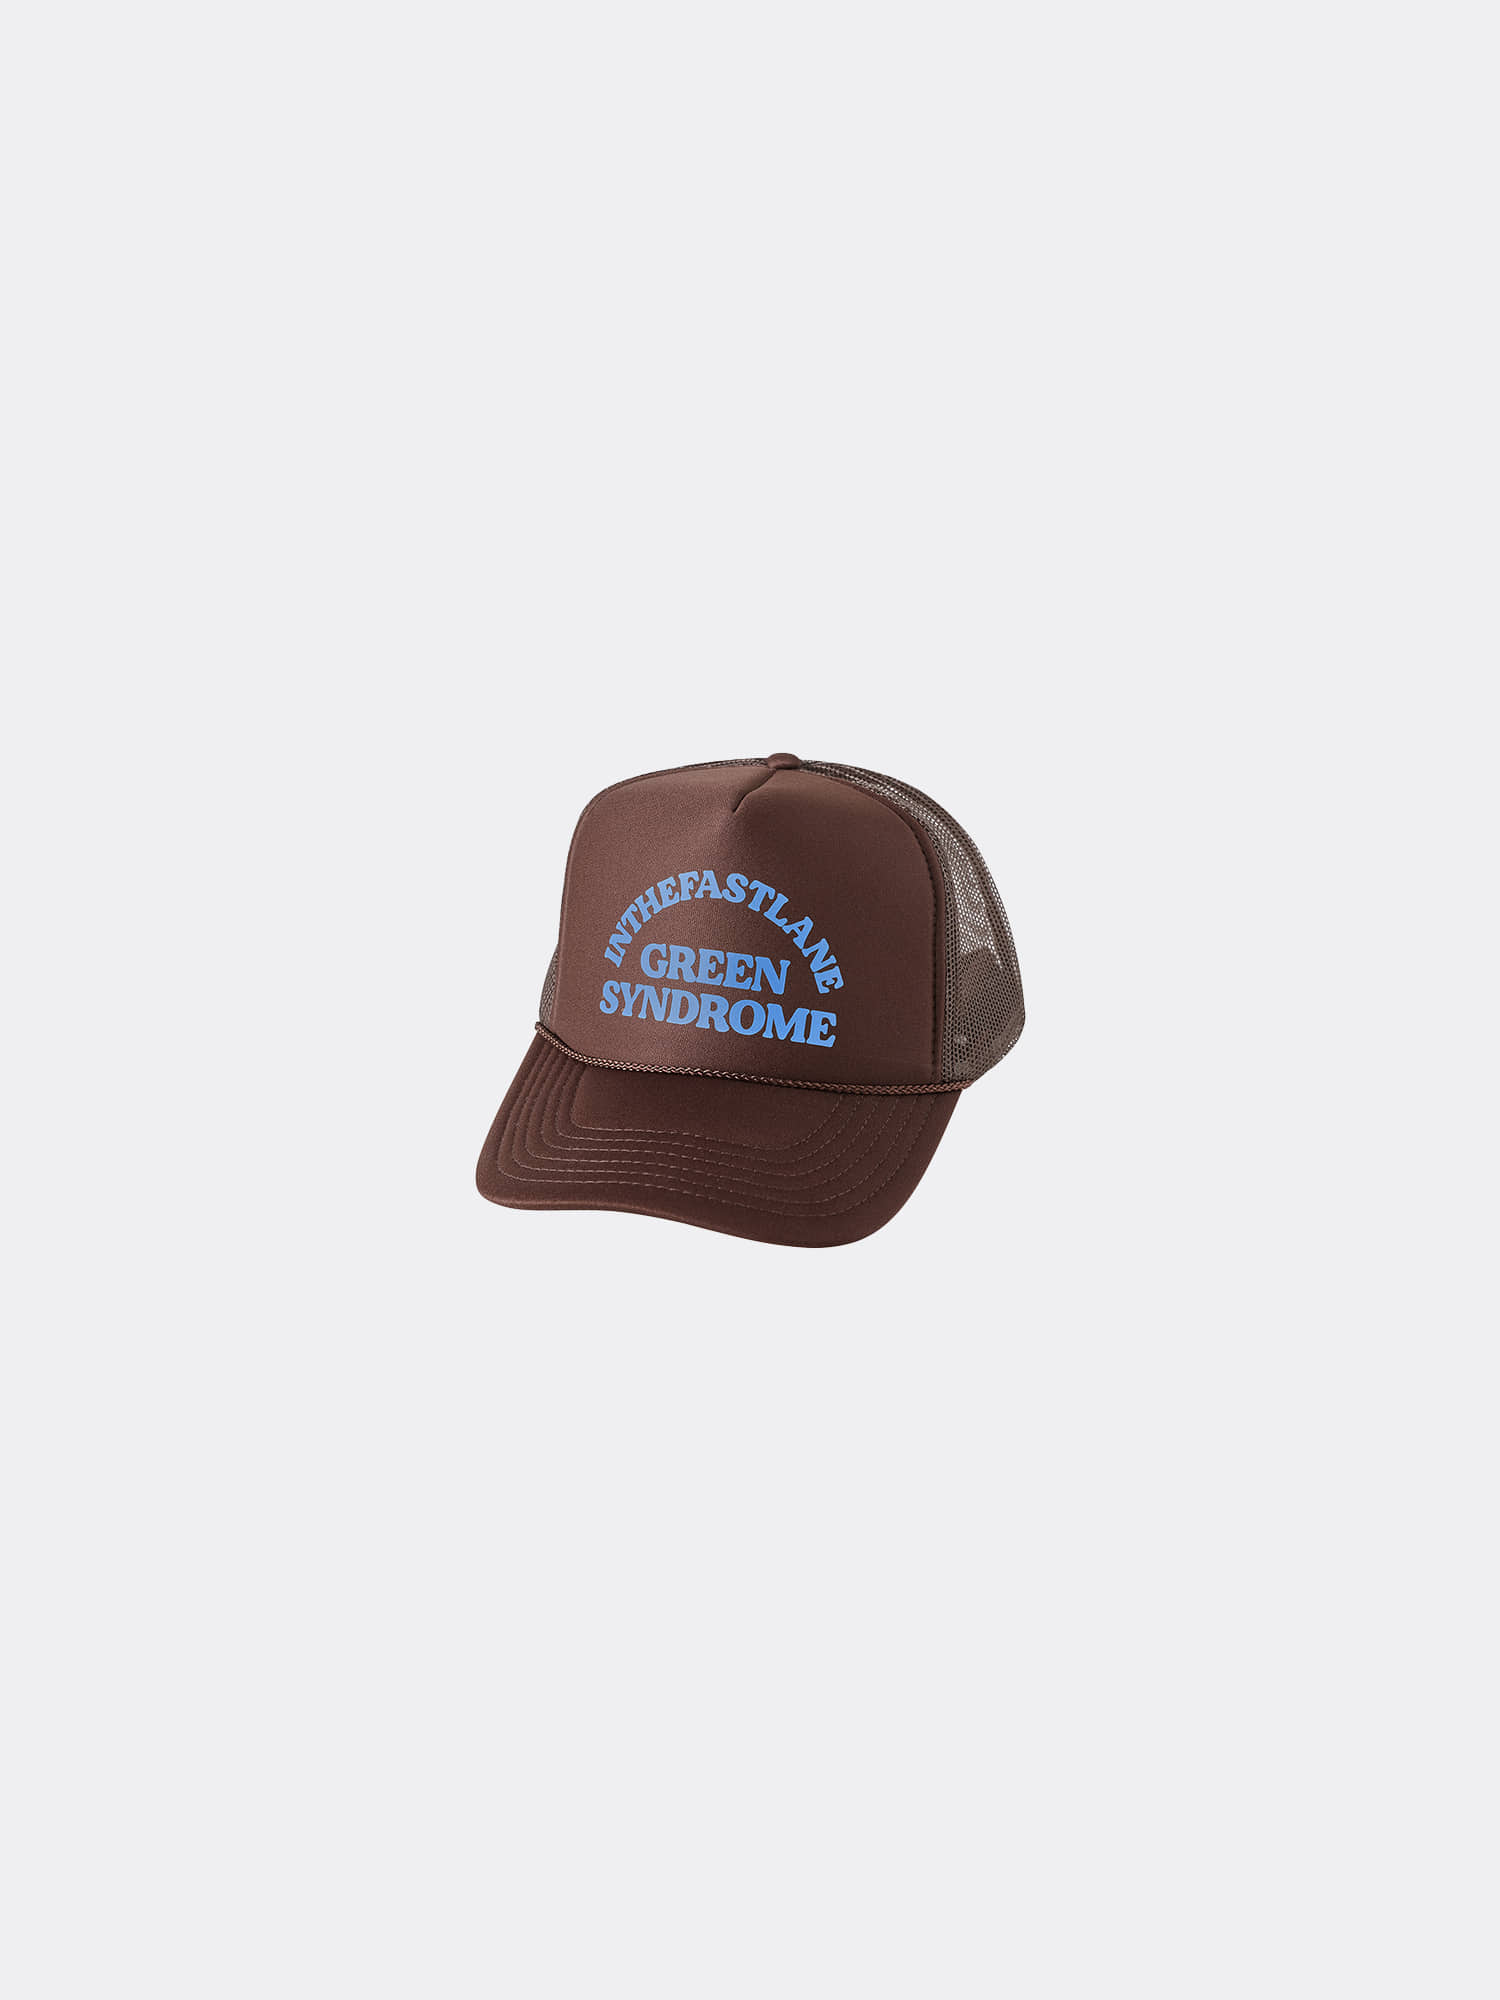 1344円 素晴らしい品質 ニューヨーク州 フラッグ ラペルピン エナメル メタル製 お土産 帽子 メンズ レディース 愛国的 ニューヨークウェービングフラッグ